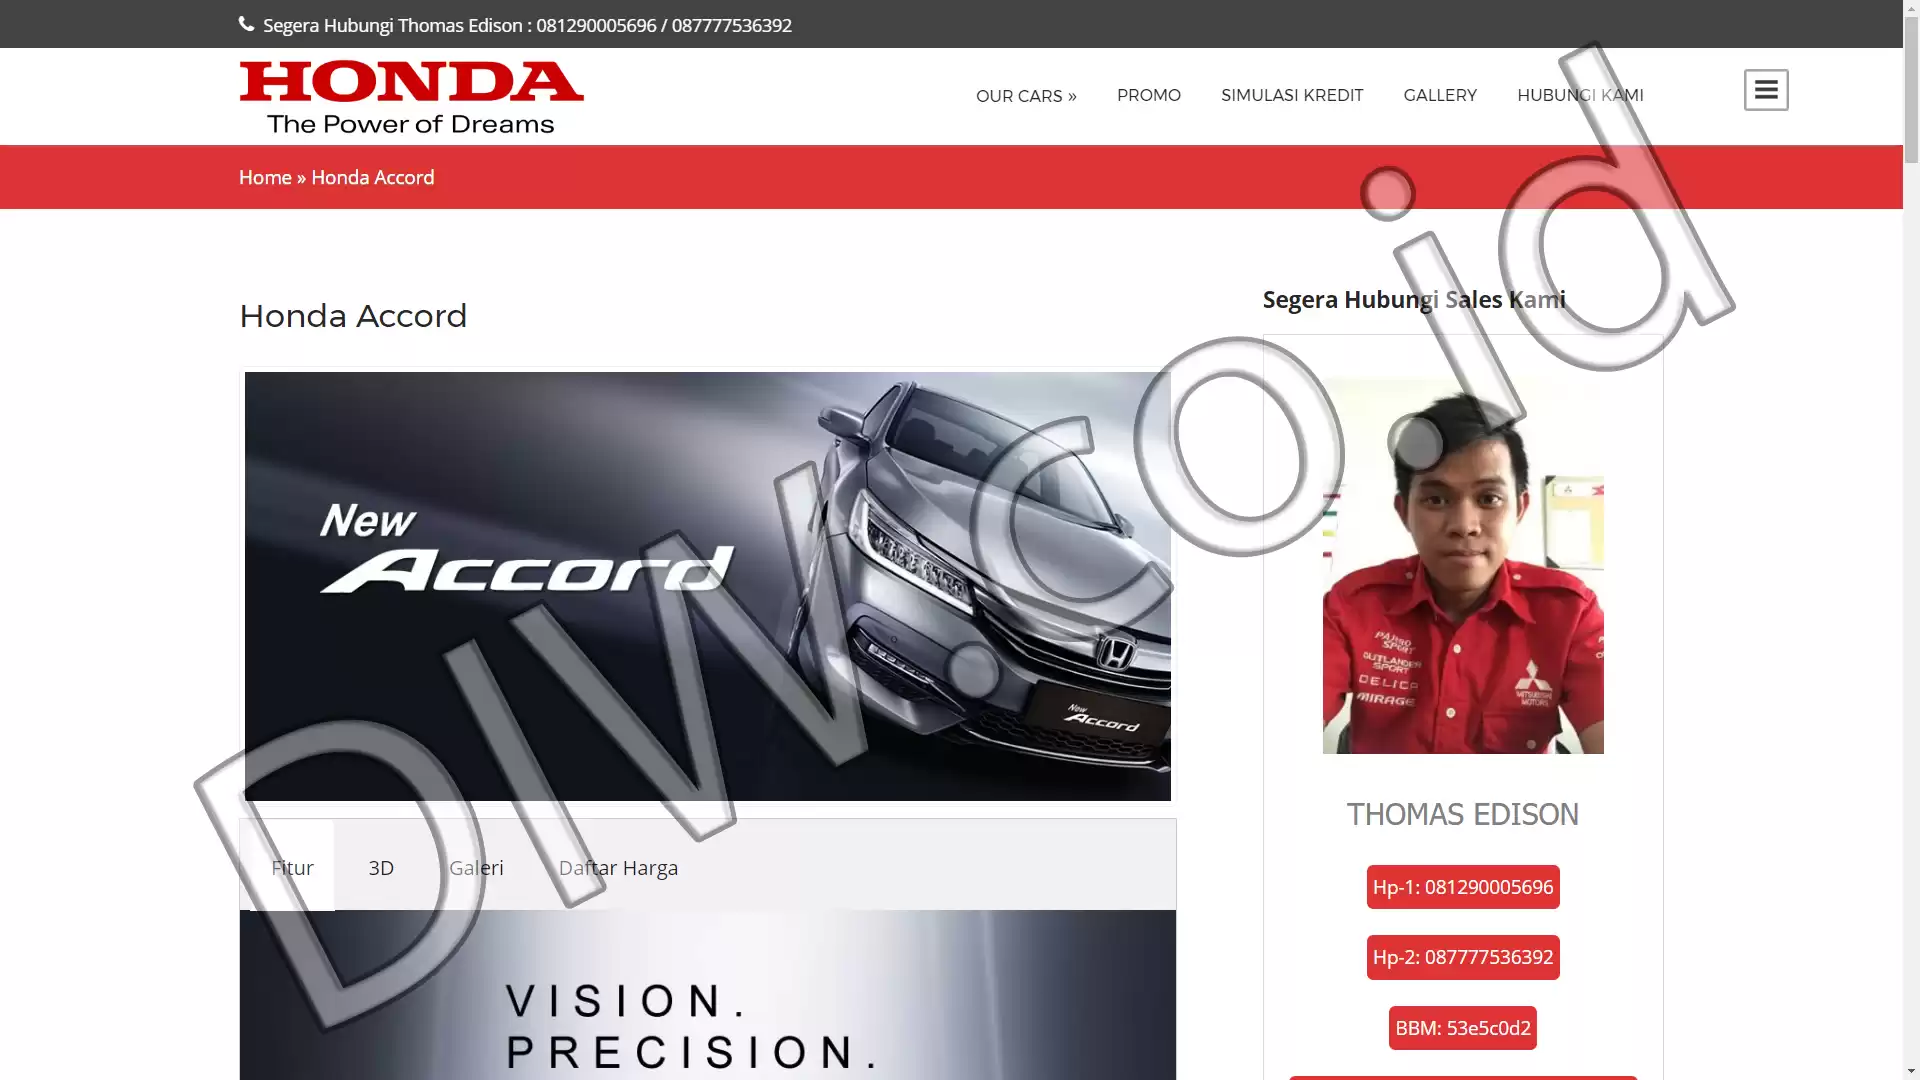 Portfolio - Promo Honda Mobil - DIW.co.id (Digital In Website) Jasa Pembuatan Website dan Program Skripsi